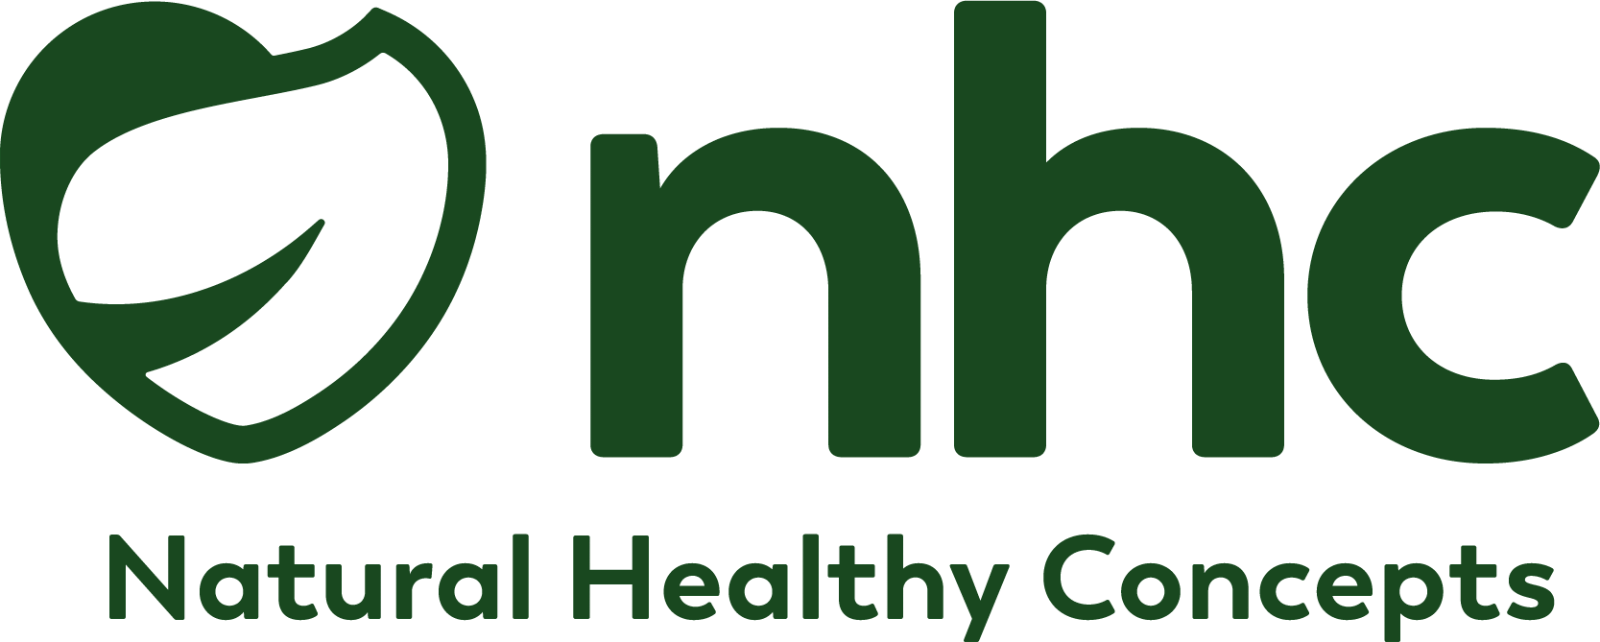 Natural Healthy Concept Logo